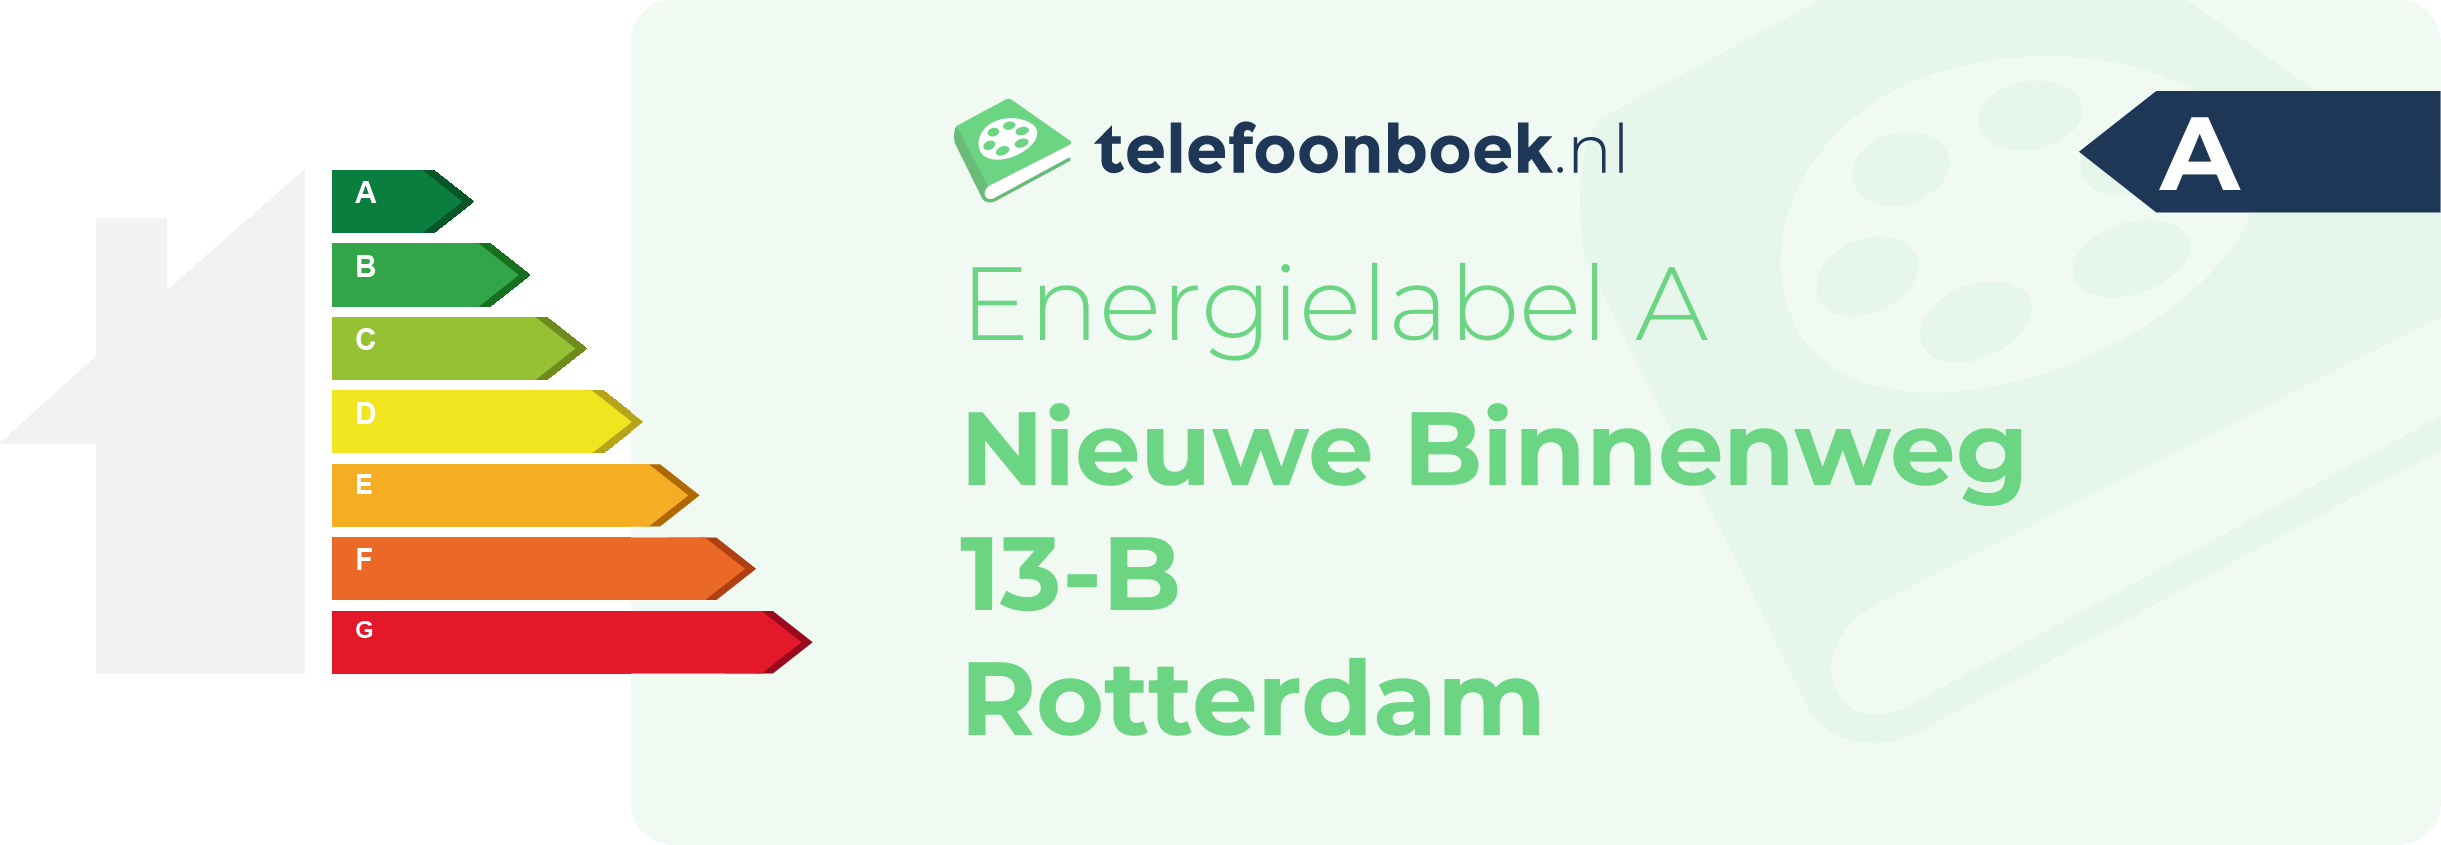 Energielabel Nieuwe Binnenweg 13-B Rotterdam